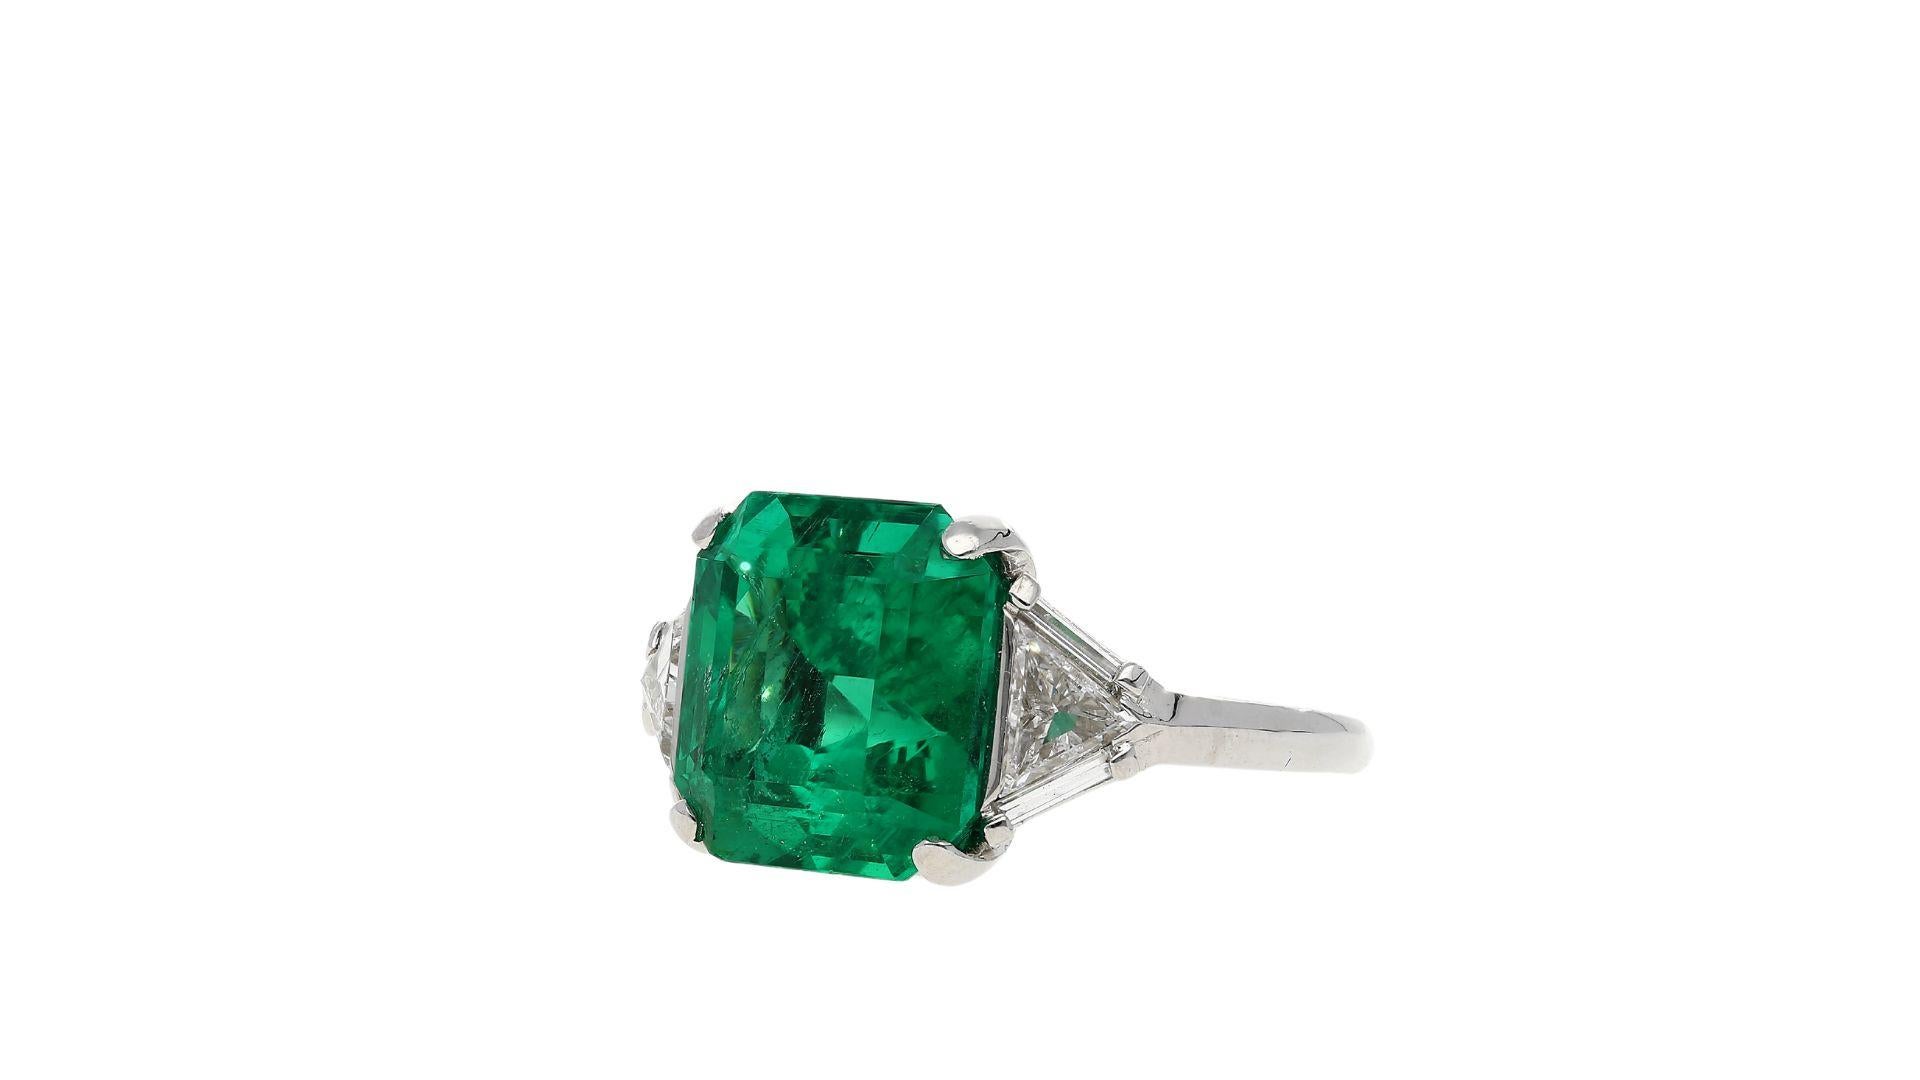 AGL zertifiziert 8,01 Karat kein Öl kolumbianischen Smaragd und Trillion Cut Diamond Vintage Platinum Ring. 

Dieser kolumbianische Smaragd zeichnet sich durch seine satte, lebhafte dunkelgrüne Farbe und seinen hervorragenden Glanz aus. Es ist